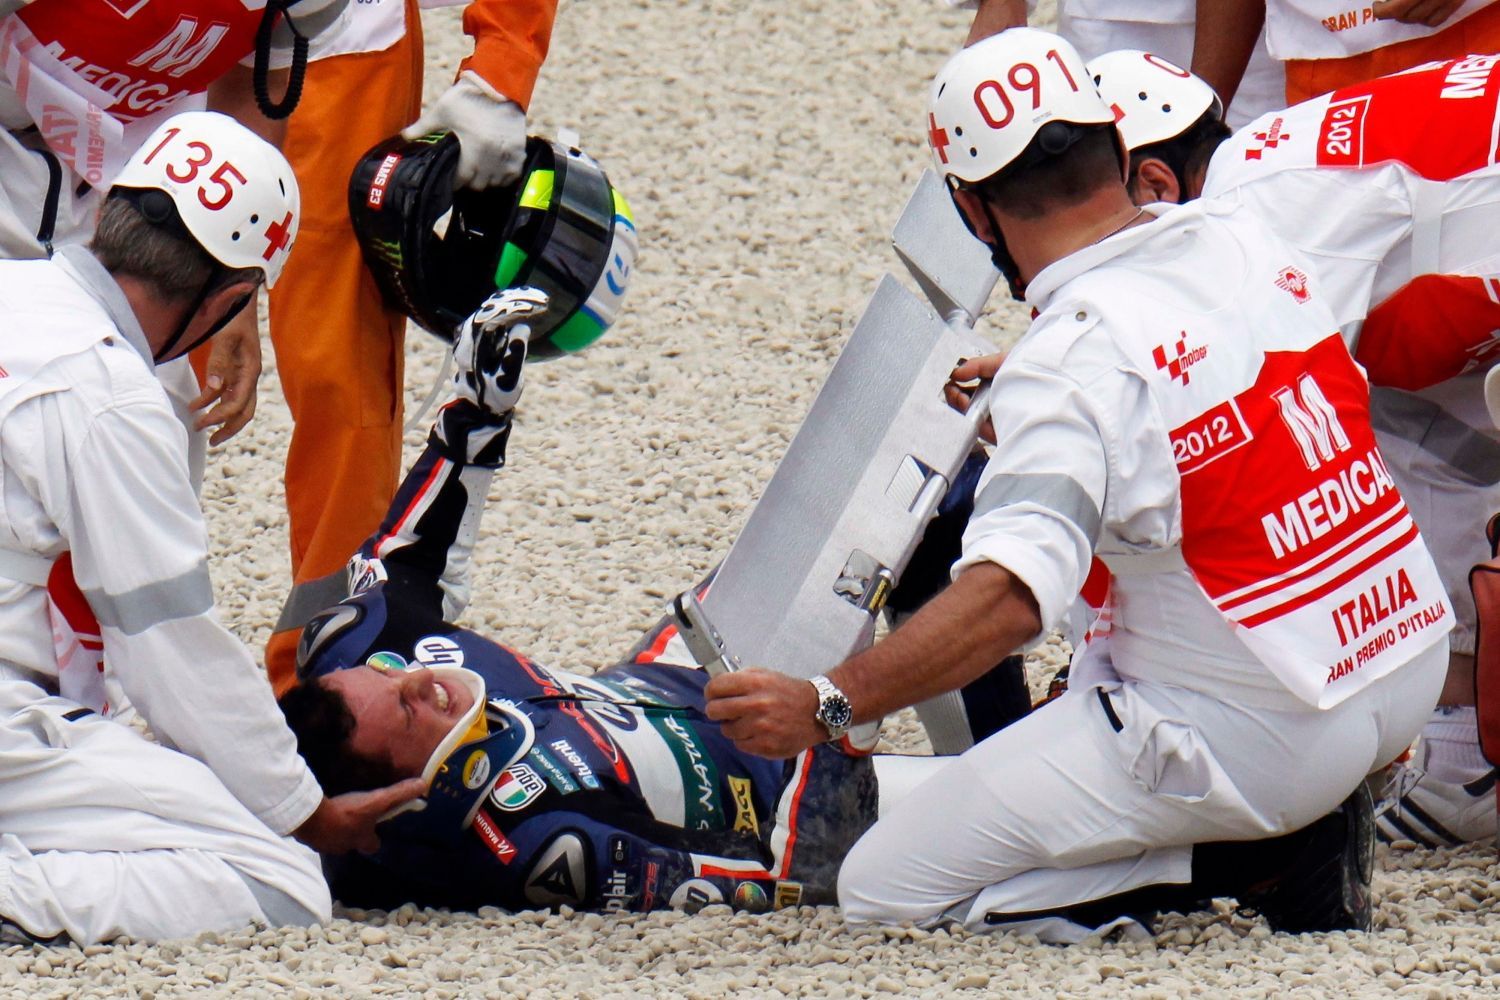 Španělský motocyklový jezdec Pol Espargaro spadl během závodu Moto2 v kvalifikaci ve Velké ceně Itálie 2012.